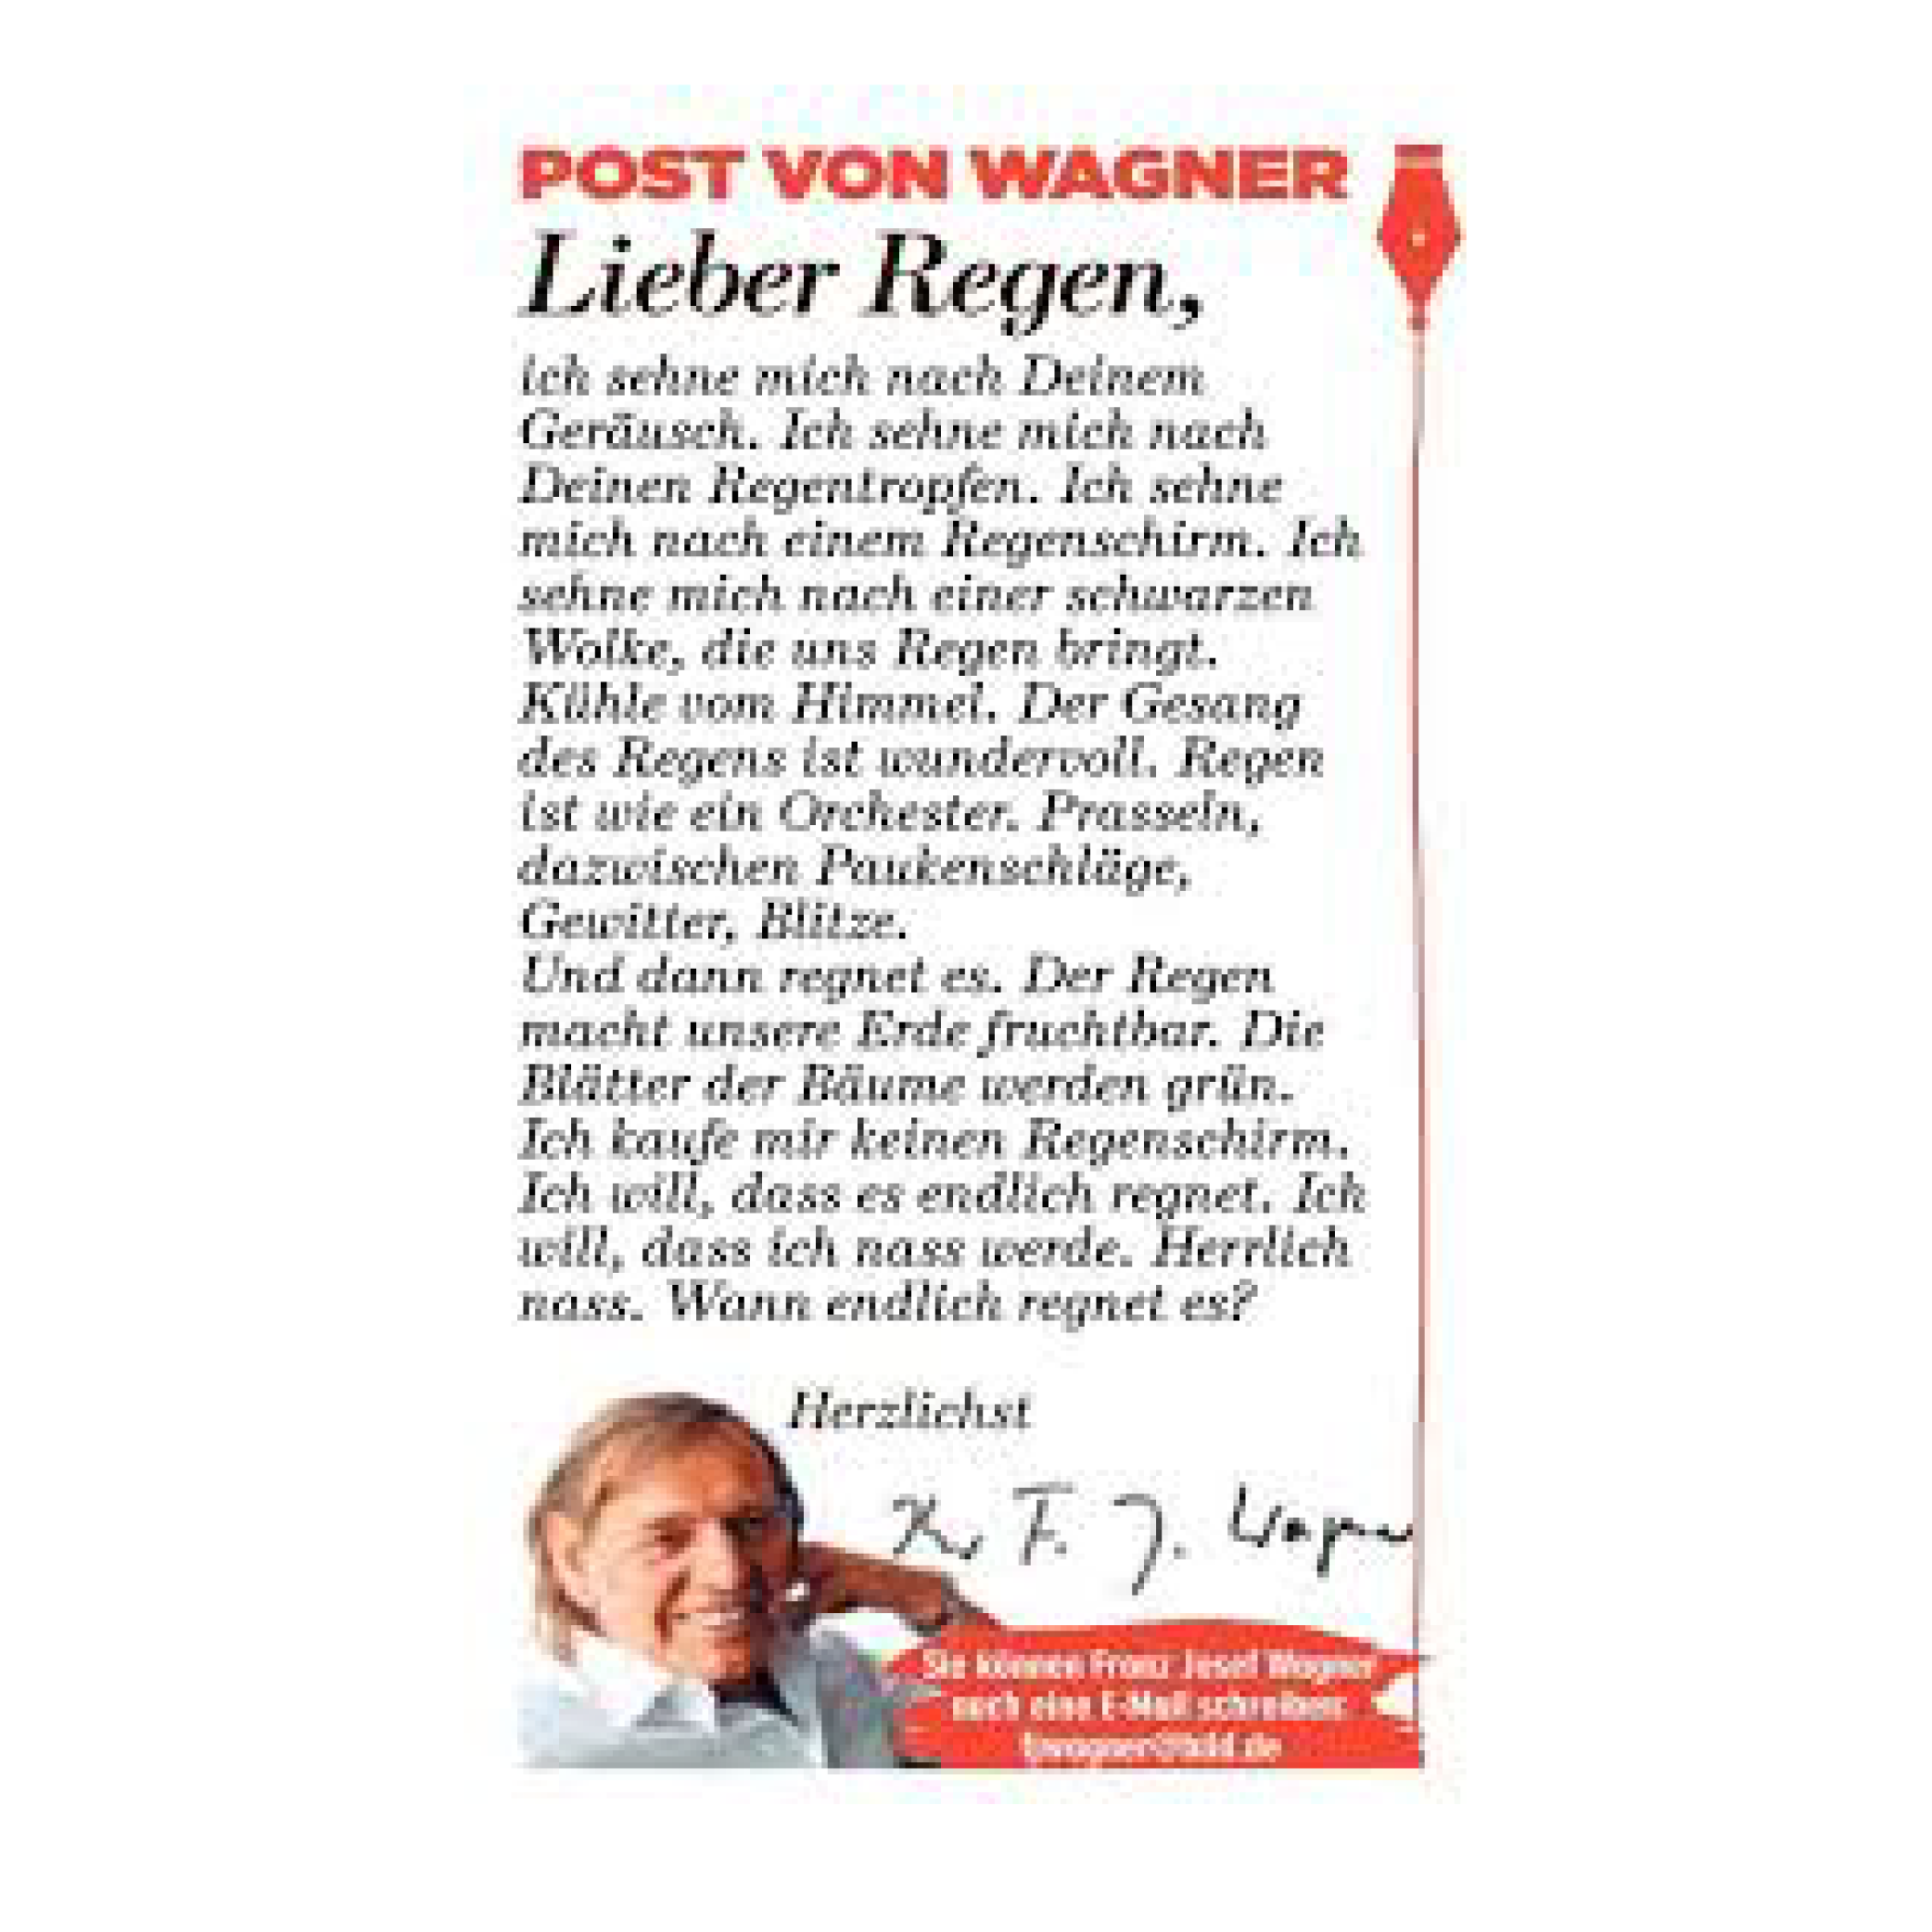 Post an Wagner&lt;a href=/kolumnen-berlin/2018/10/7/post-an-wagner&gt;Mehr →&lt;/a&gt;